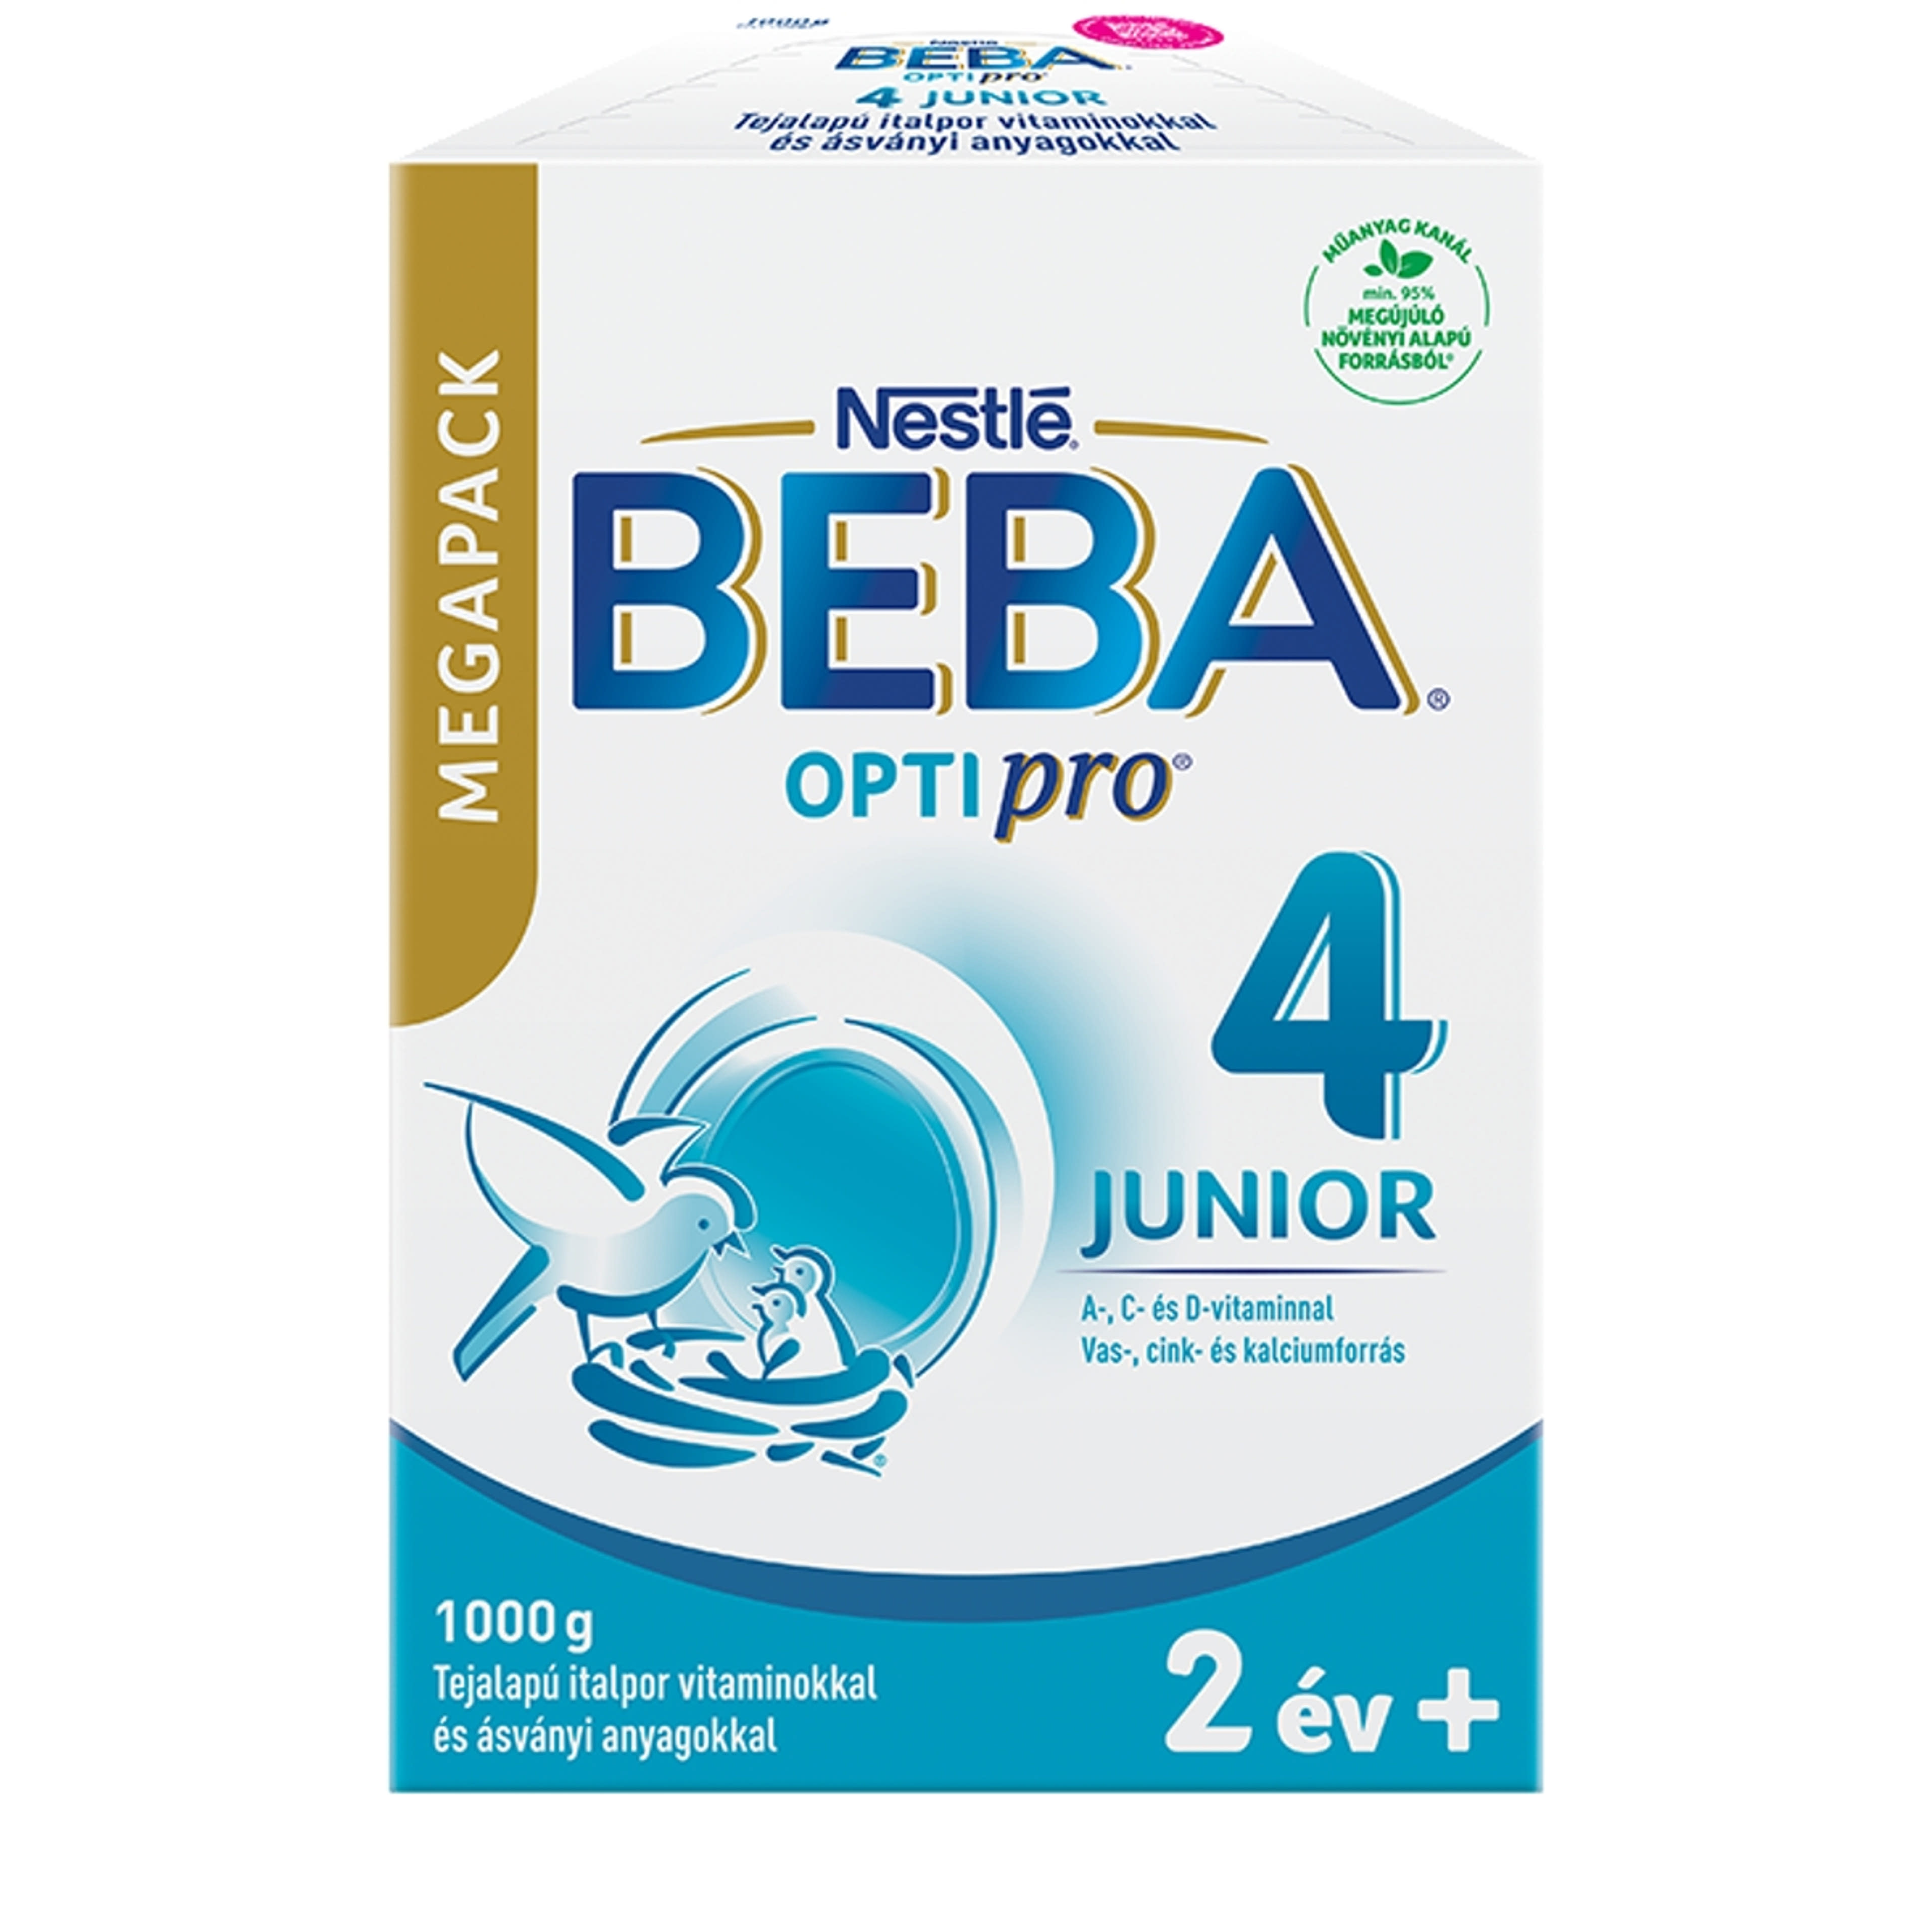 Beba Optipro 4 Junior tejalapú italpor vitaminokkal és ásványi anyagokkal 2 éves kortól - 1000 g